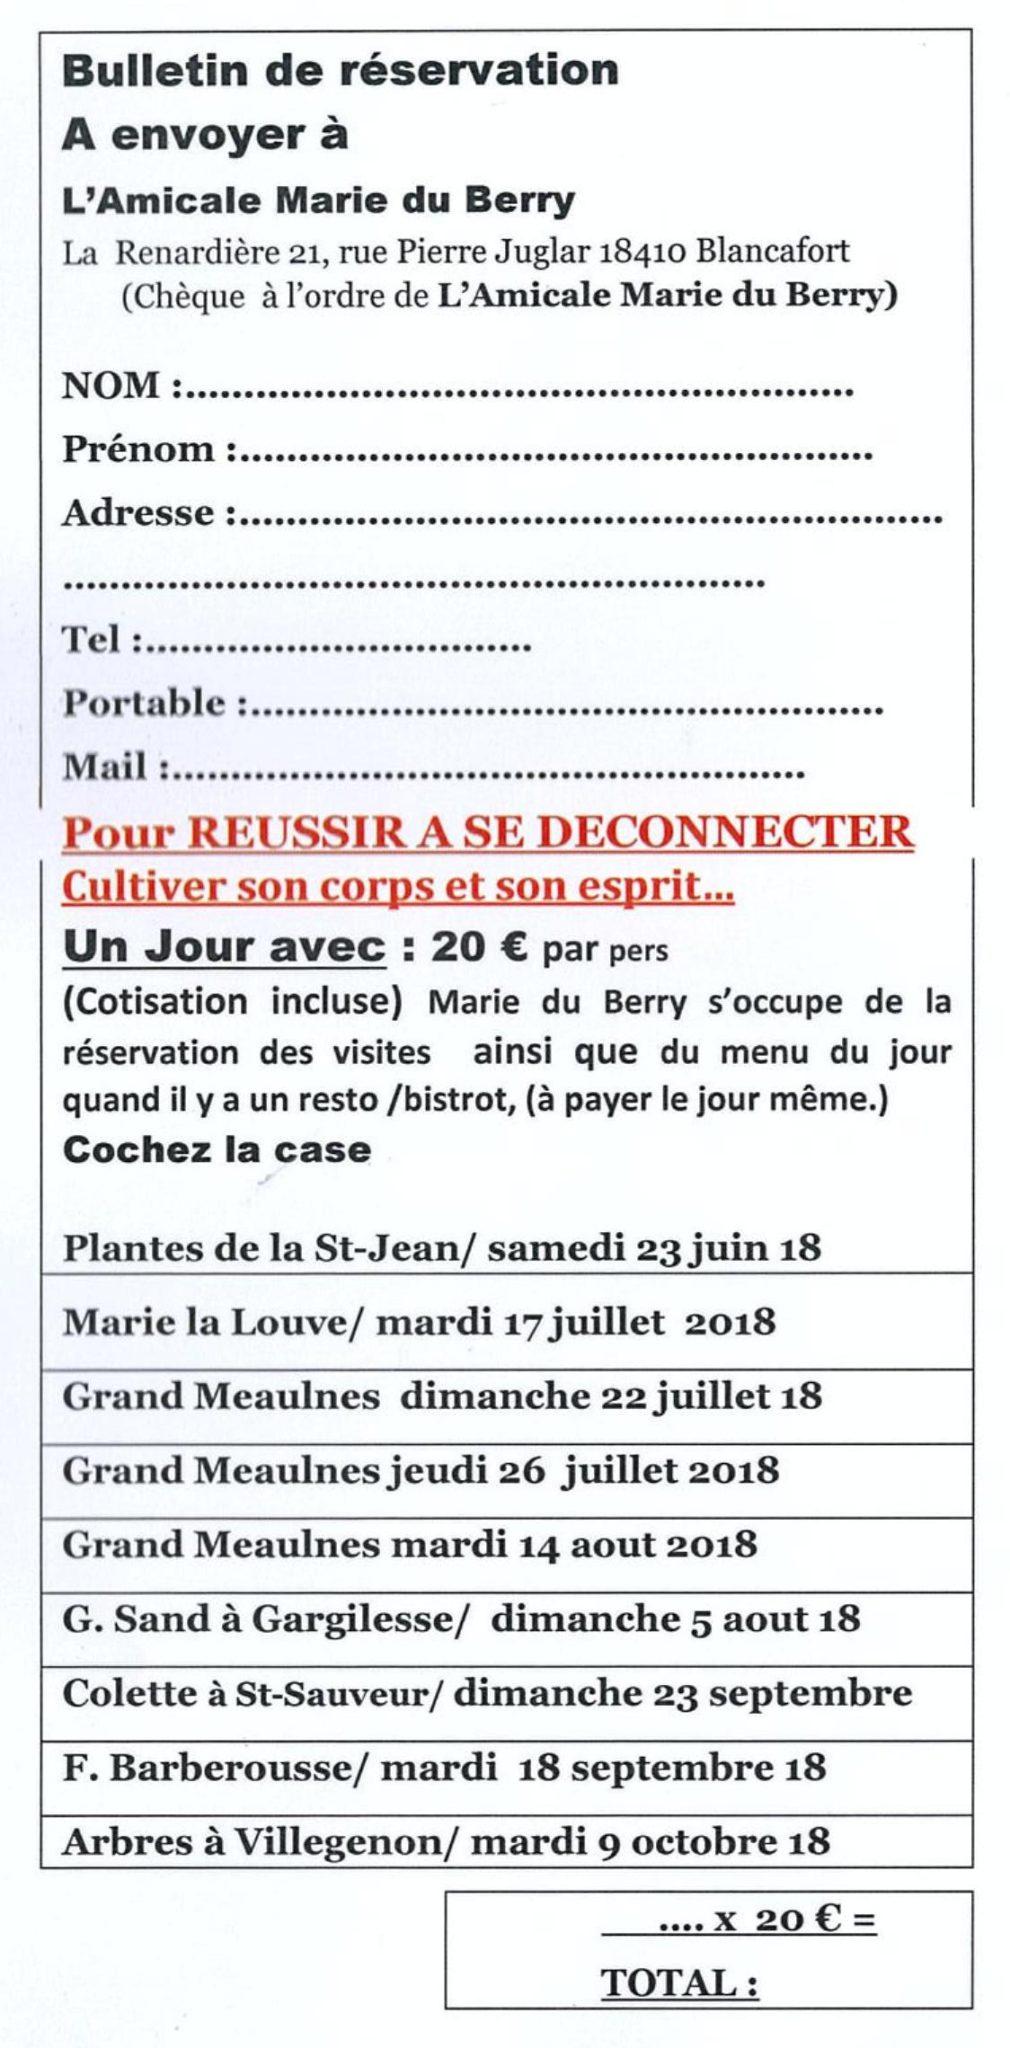 Bulletin d'inscription UN JOUR AVEC - Amicale Marie du Berry été 2018